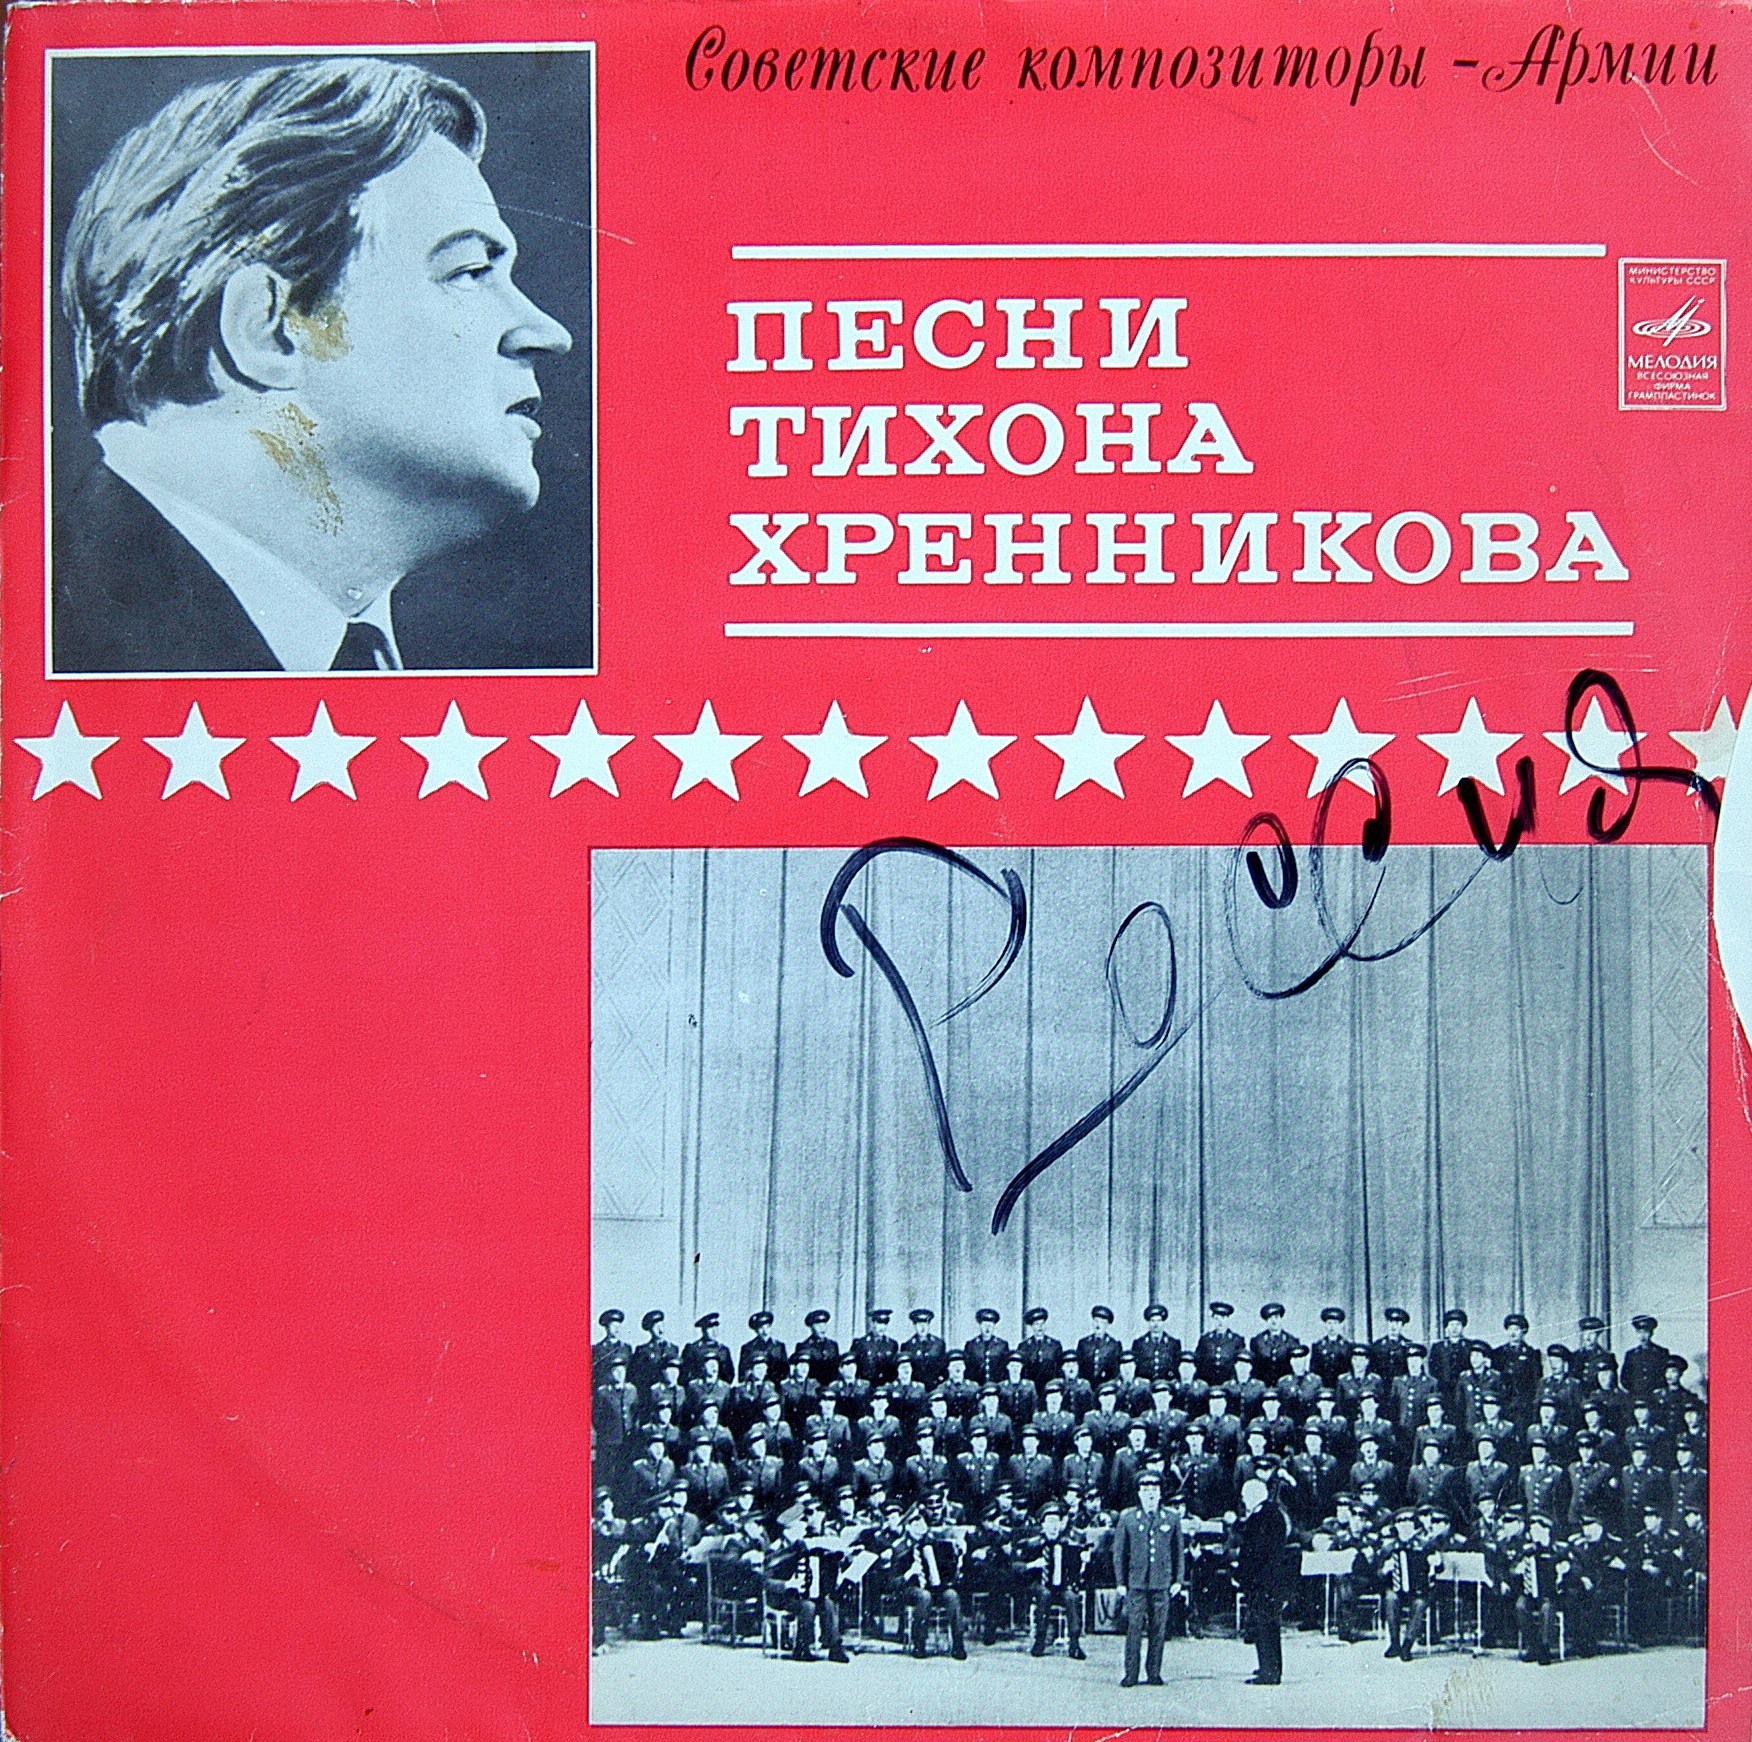 Песни Тихона ХРЕННИКОВА. Из цикла "Советские композиторы - Армии"